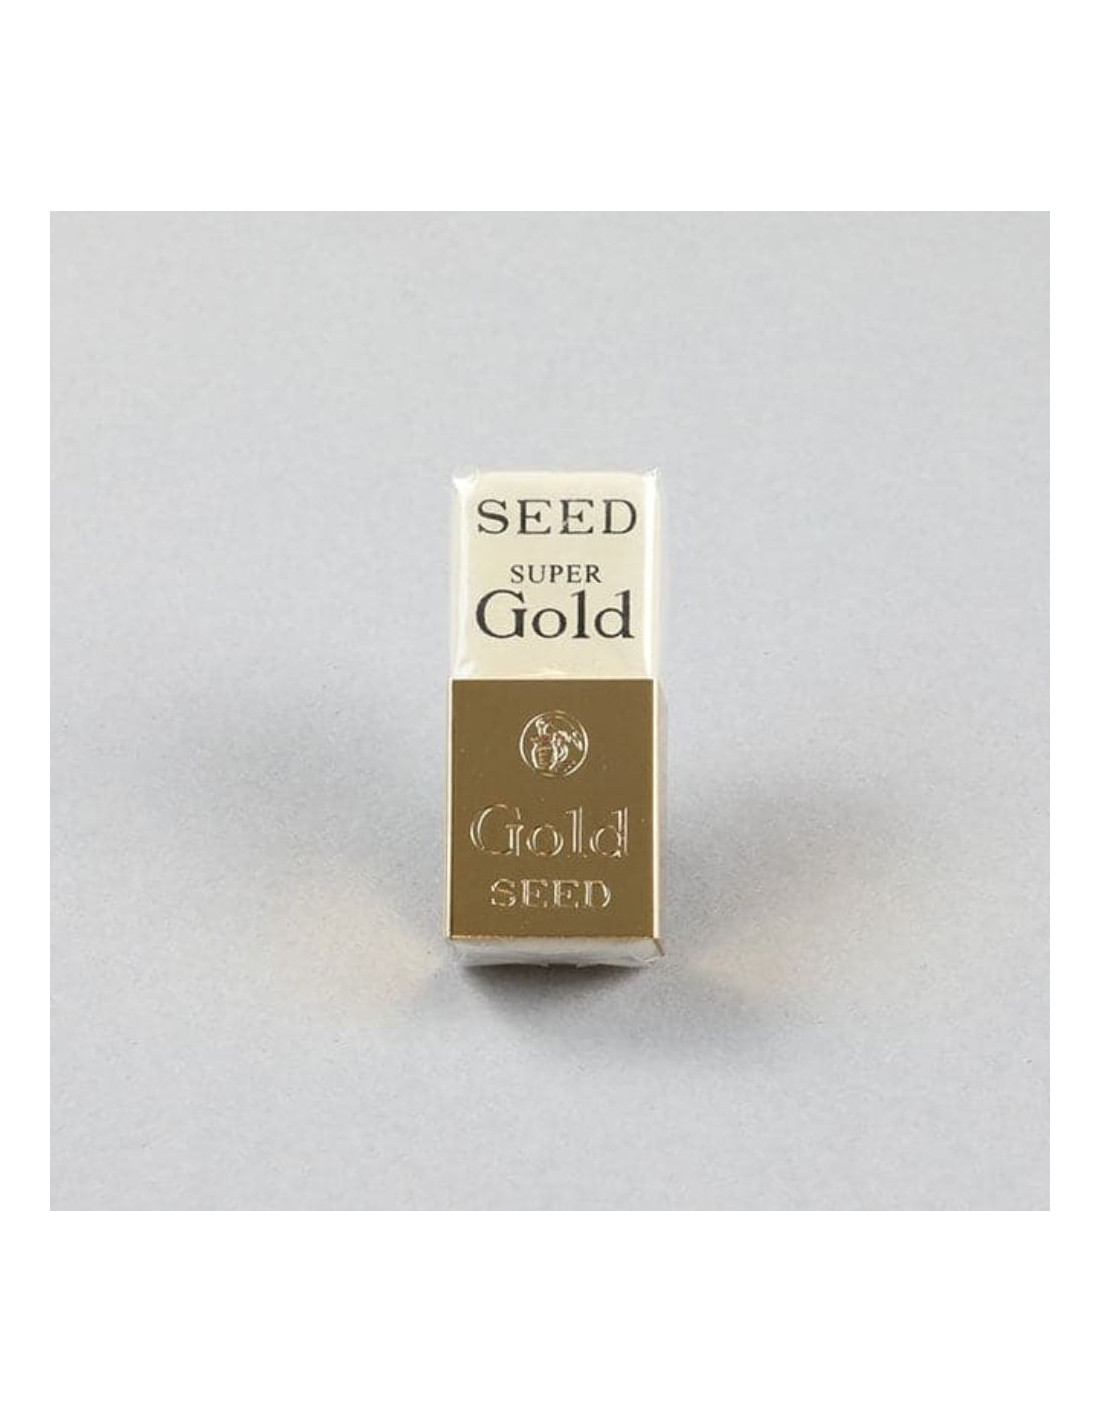 Seed Eraser - Super Gold